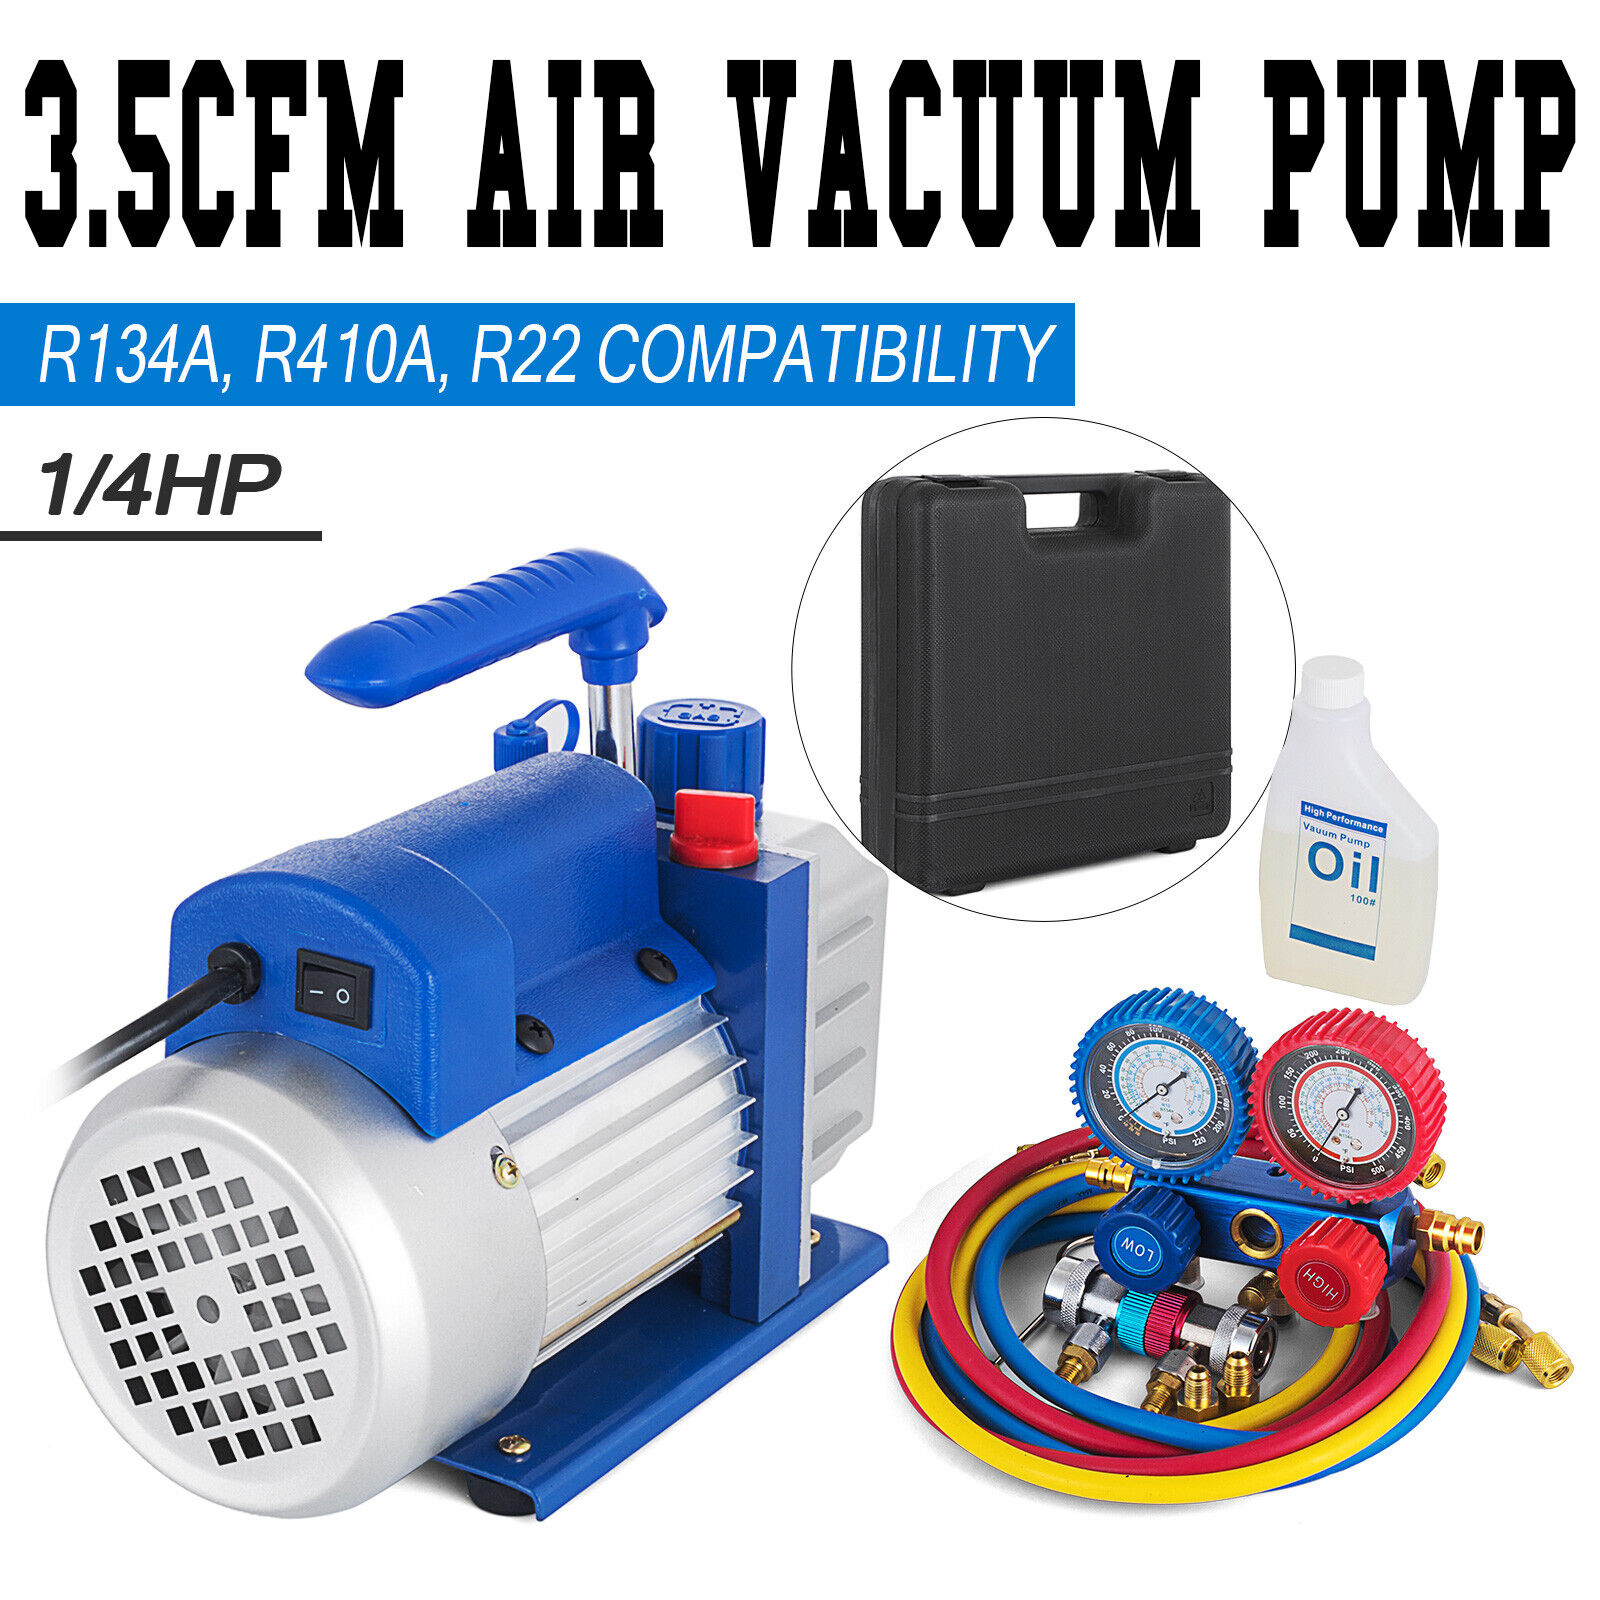 A/C Manifold Gauge Set R134A R410a R22 With 3,5 CFM 1/4HP Air Vacuum Pump W/ Oil